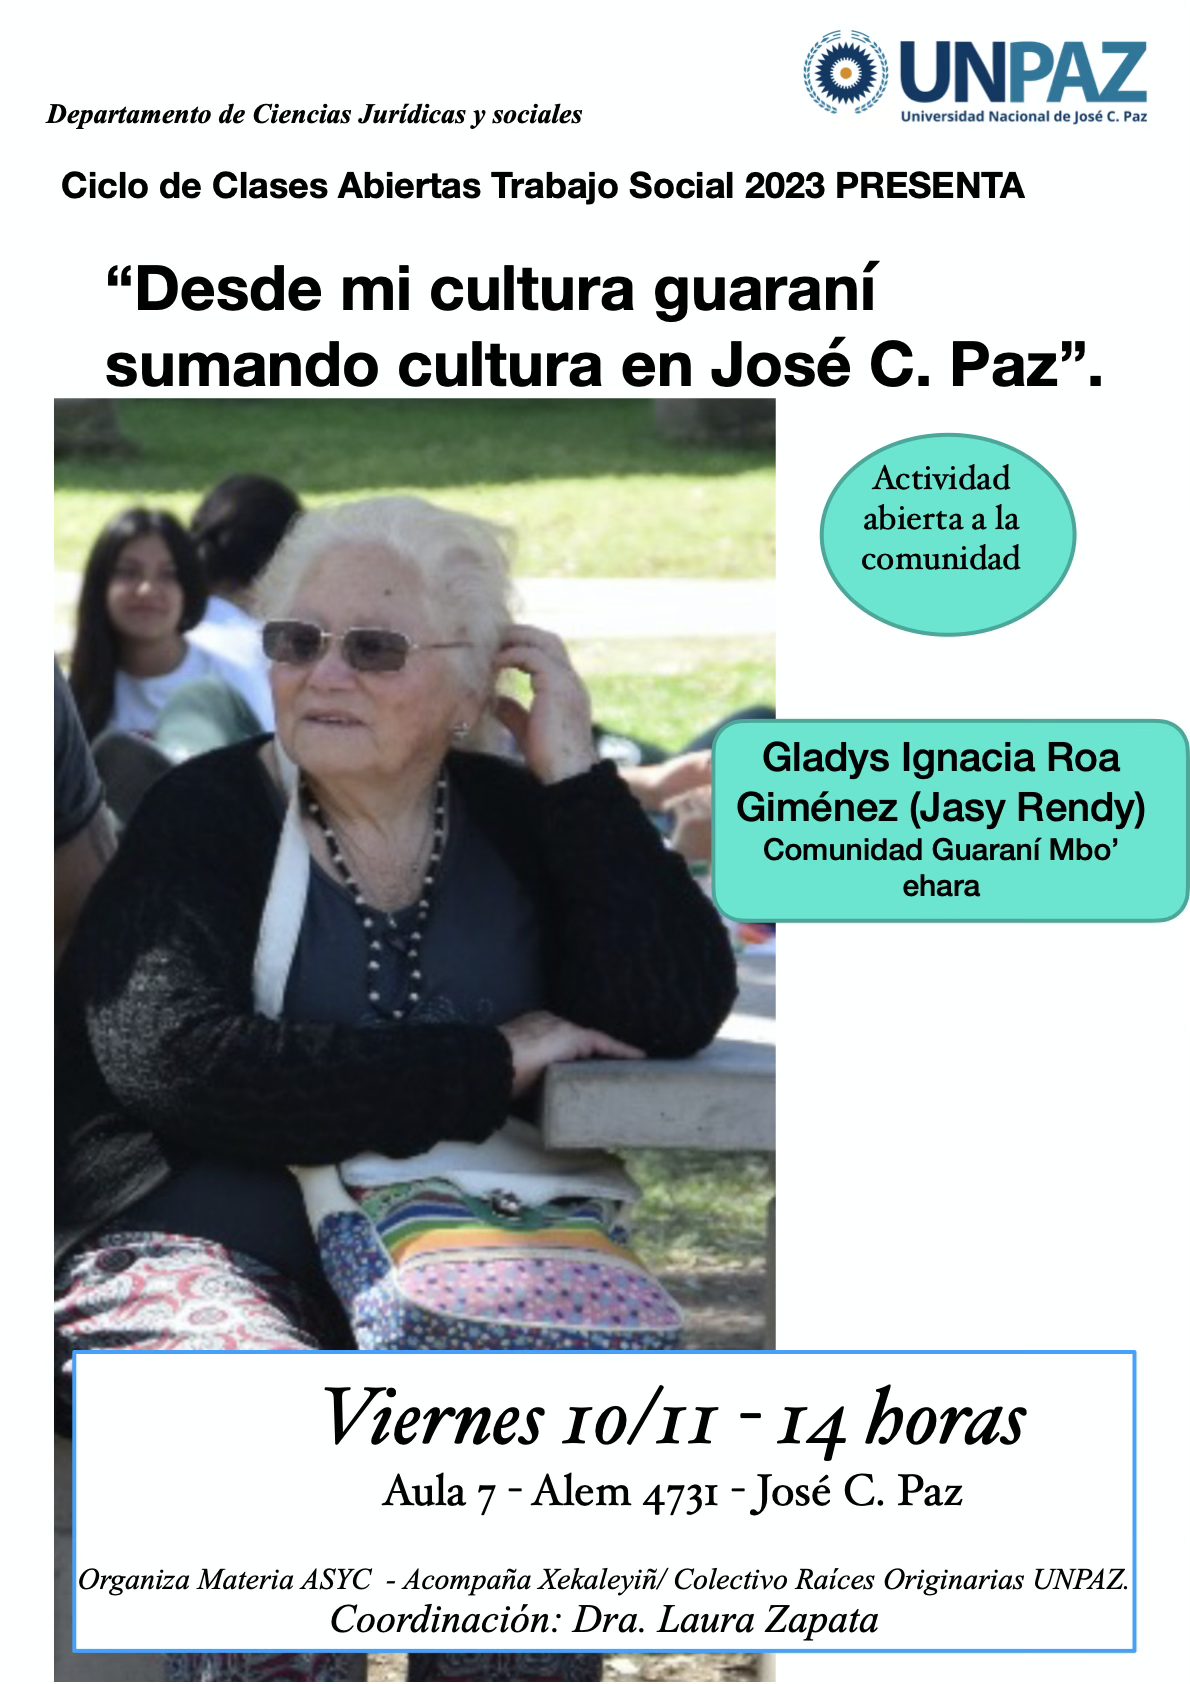 La Unpaz invita a la clase abierta “Desde mi cultura guaraní, sumando cultura en José. C. Paz”